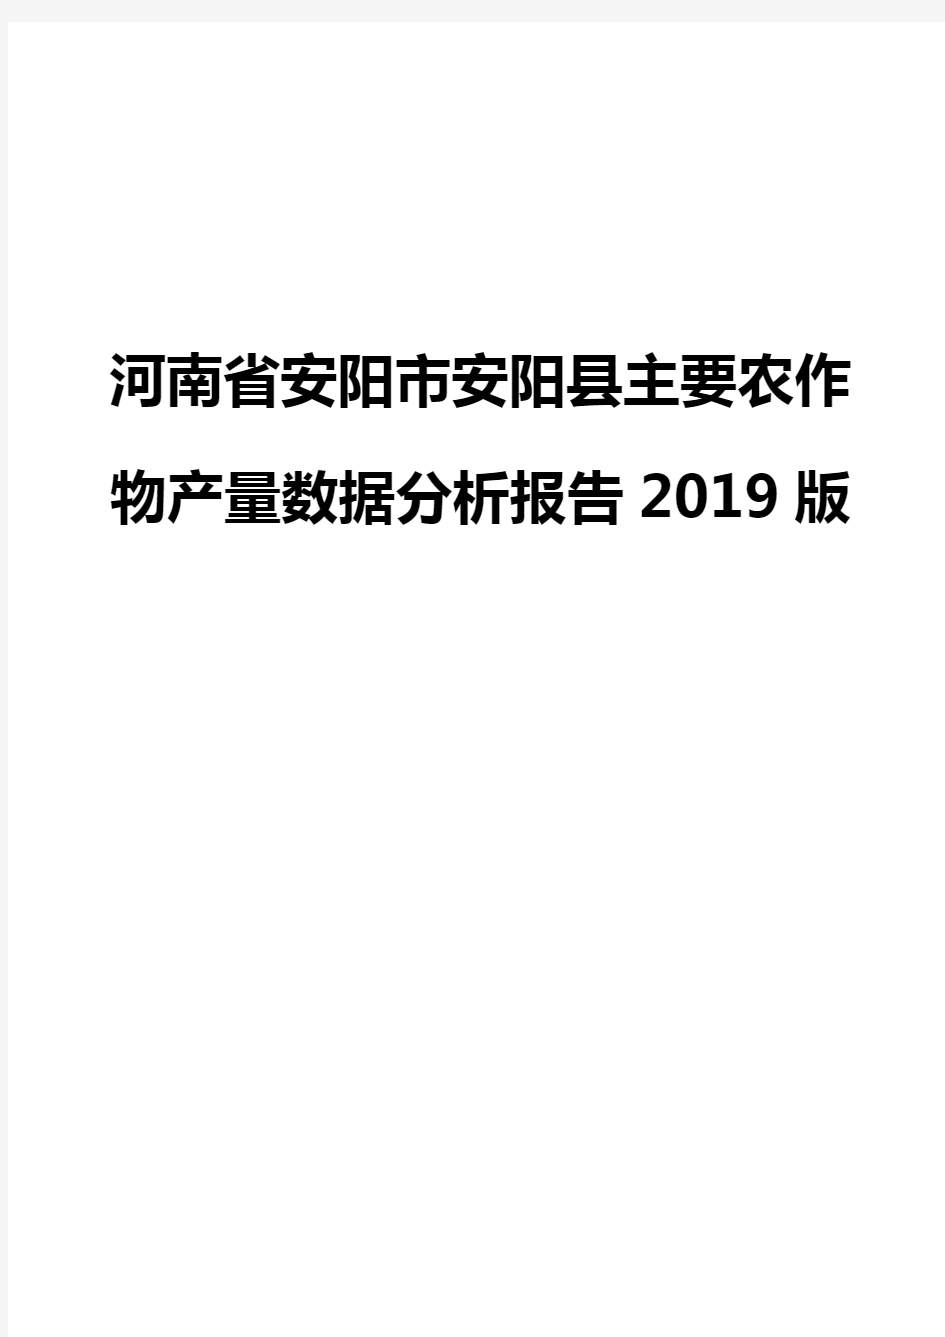 河南省安阳市安阳县主要农作物产量数据分析报告2019版